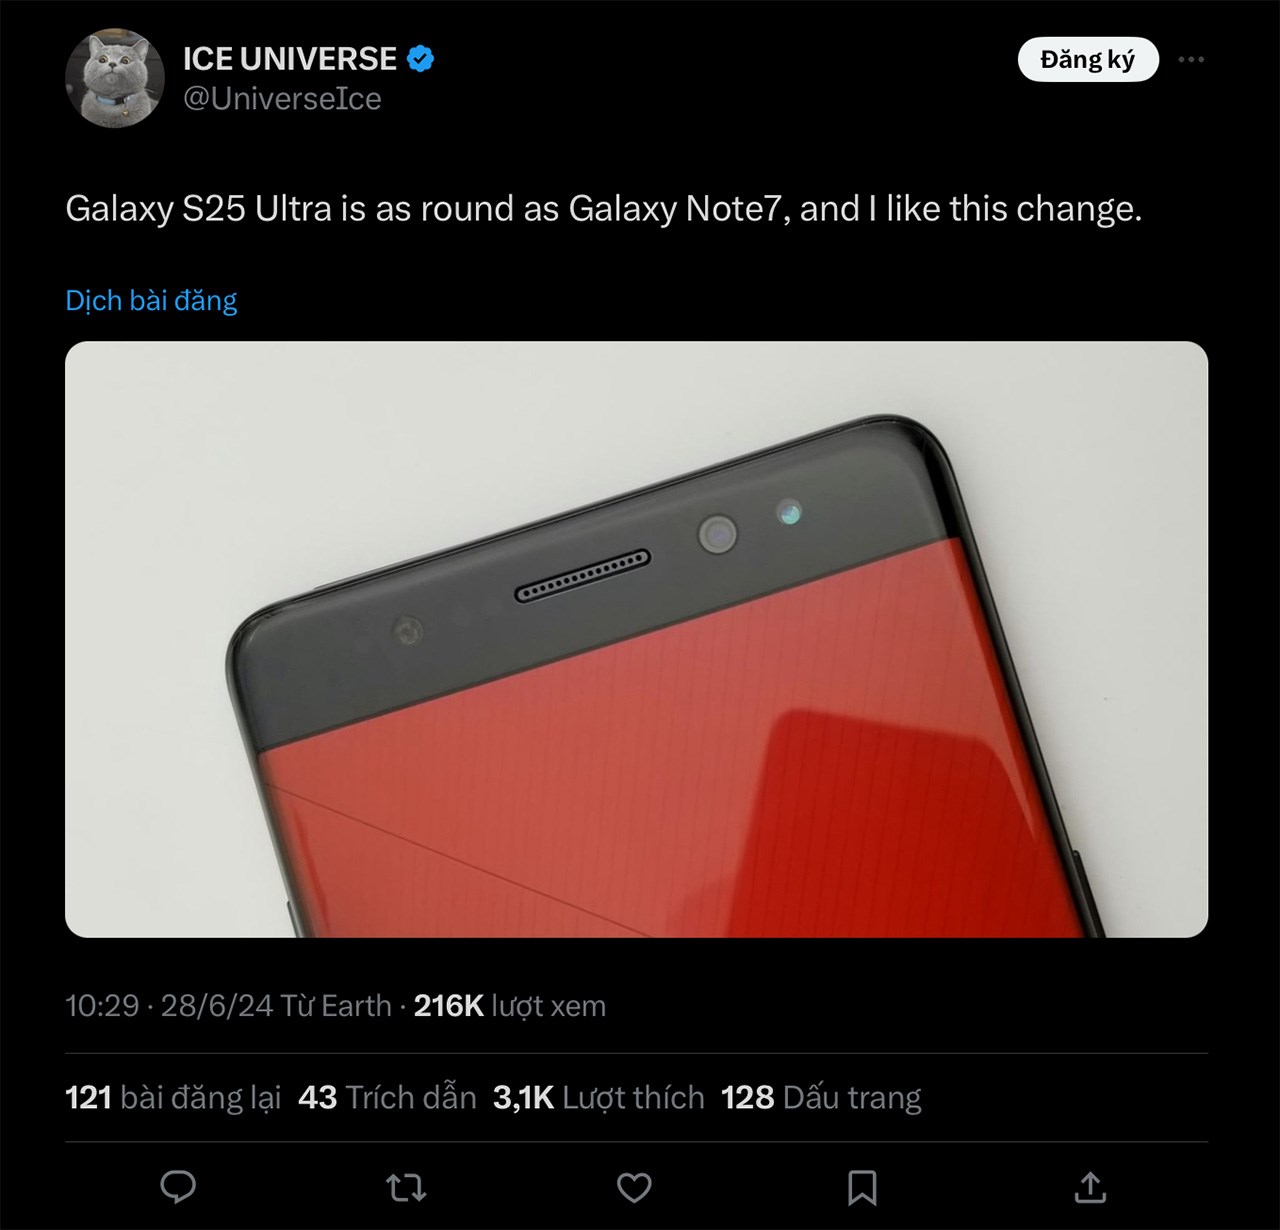 Galaxy S25 Ultra sắp tới sẽ có thiết kế bo cong giống Galaxy Note 7 